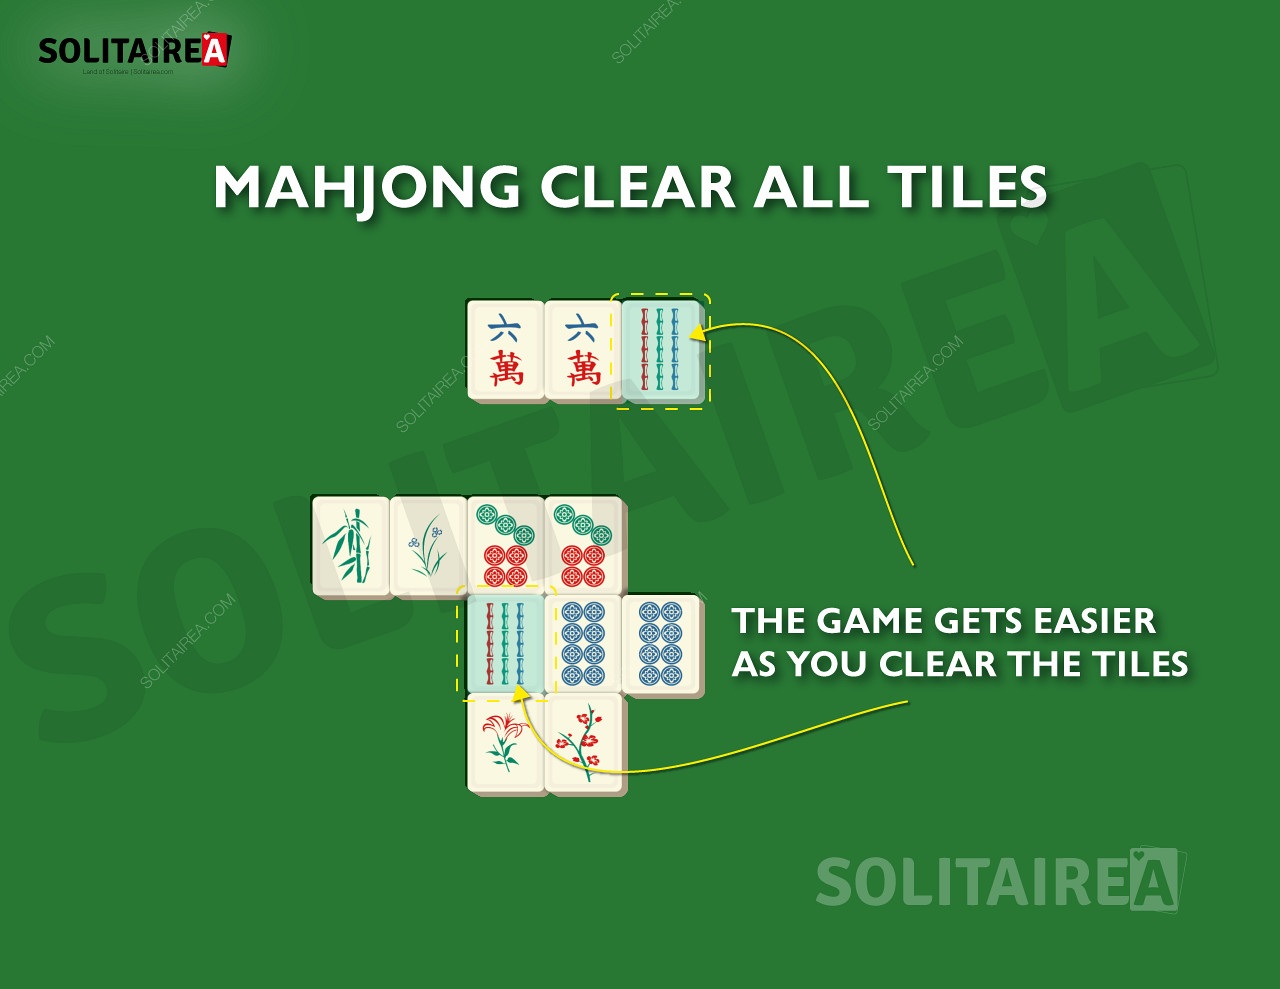 Kun etenet, Mahjong Solitaire -pelissä jää vähemmän pelilaattoja tyhjennettäväksi.